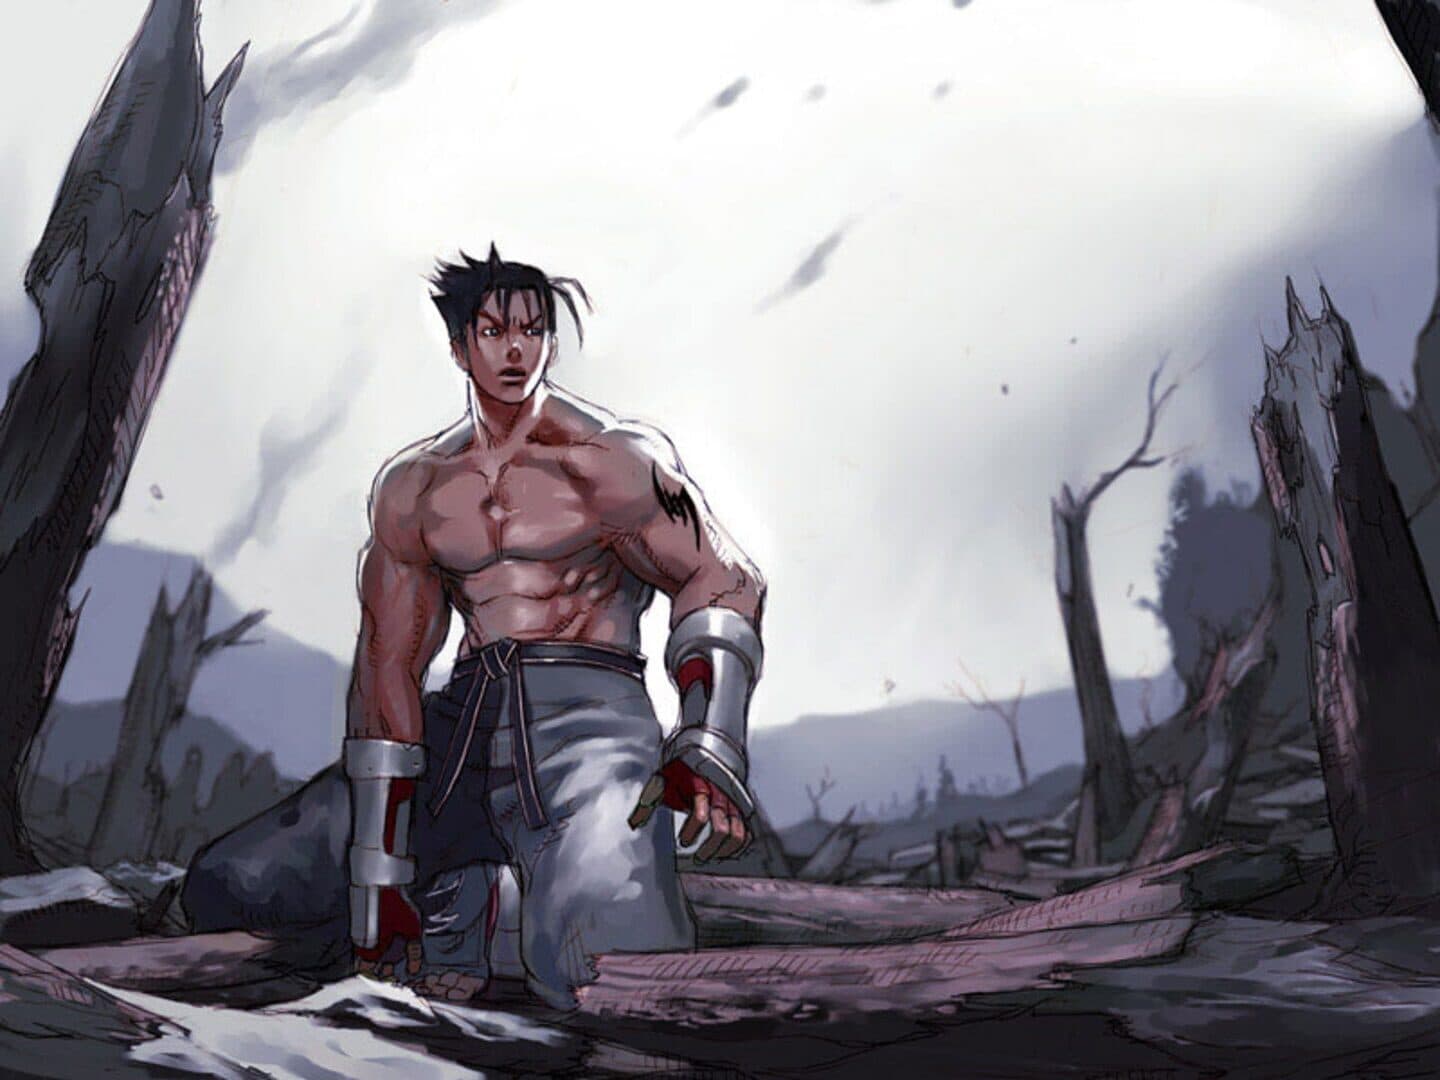 Tekken 5 Image